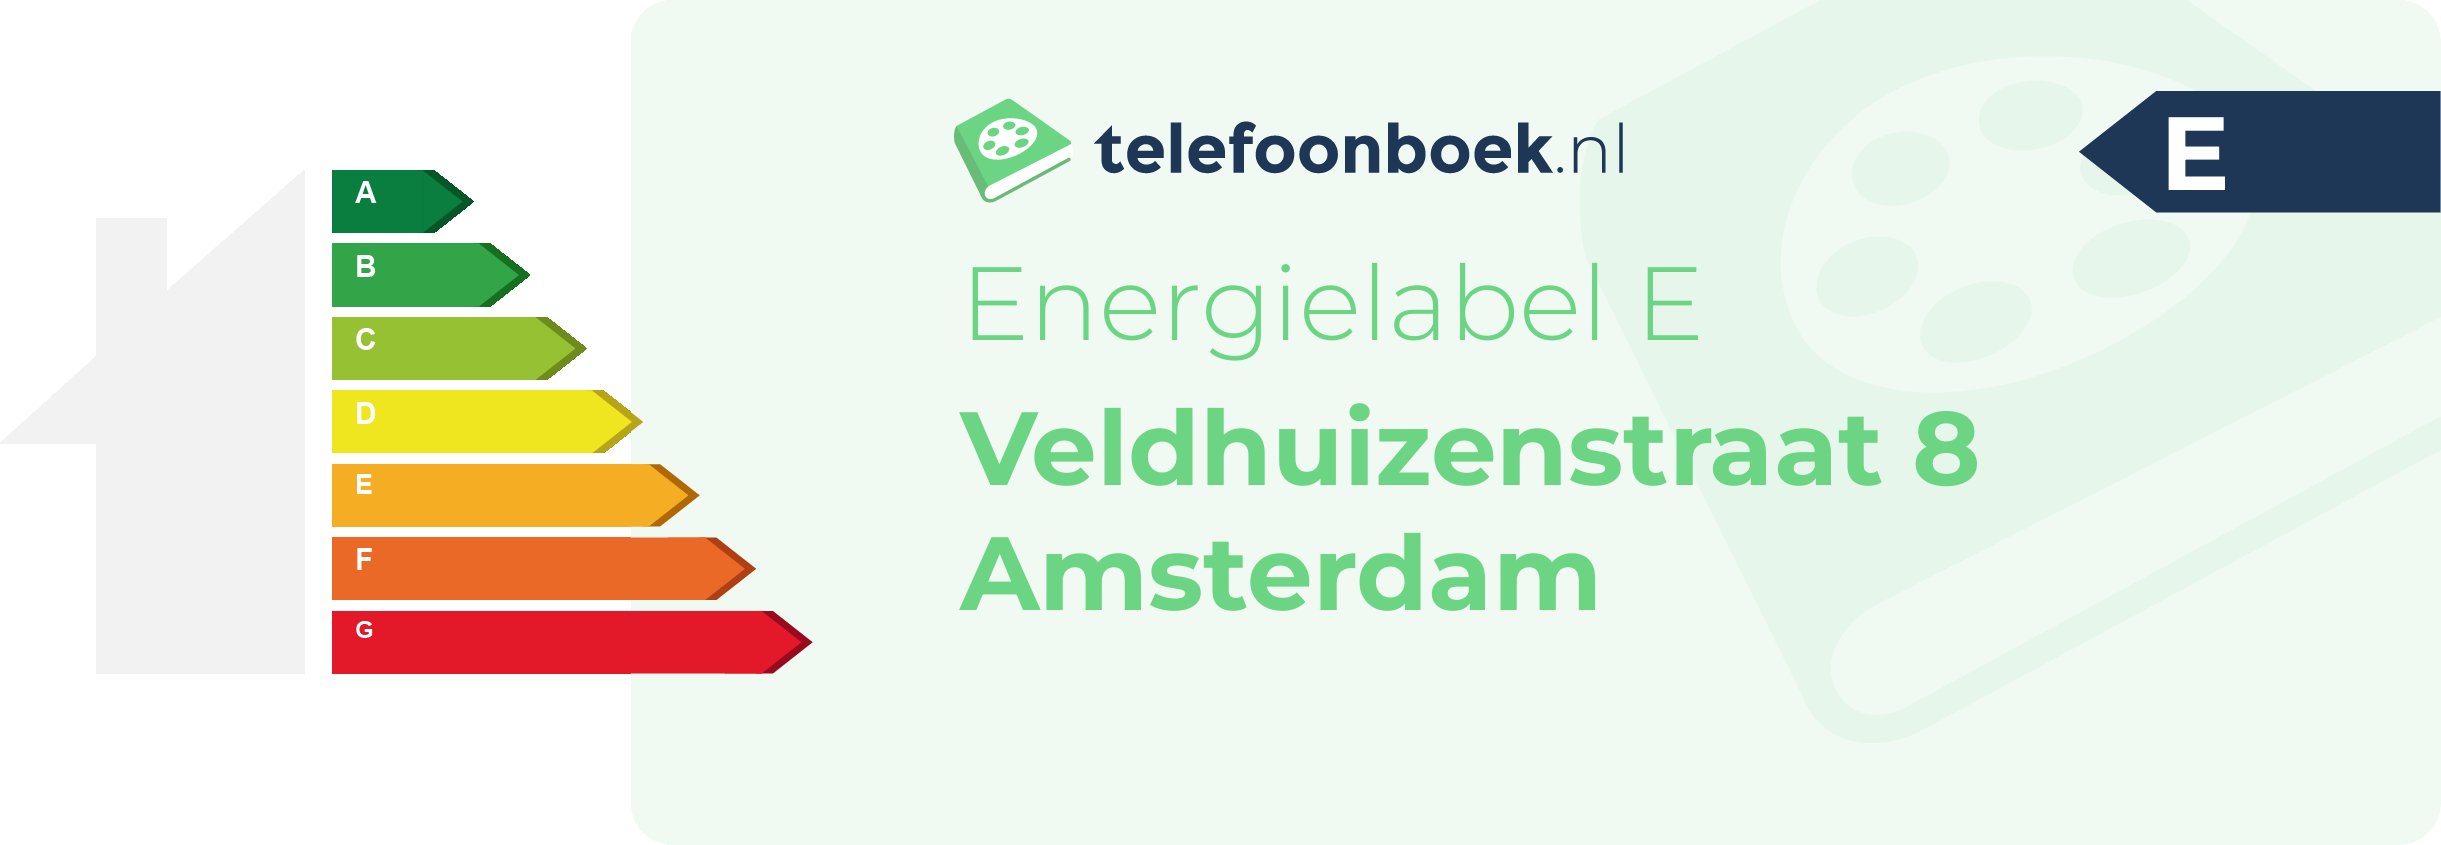 Energielabel Veldhuizenstraat 8 Amsterdam